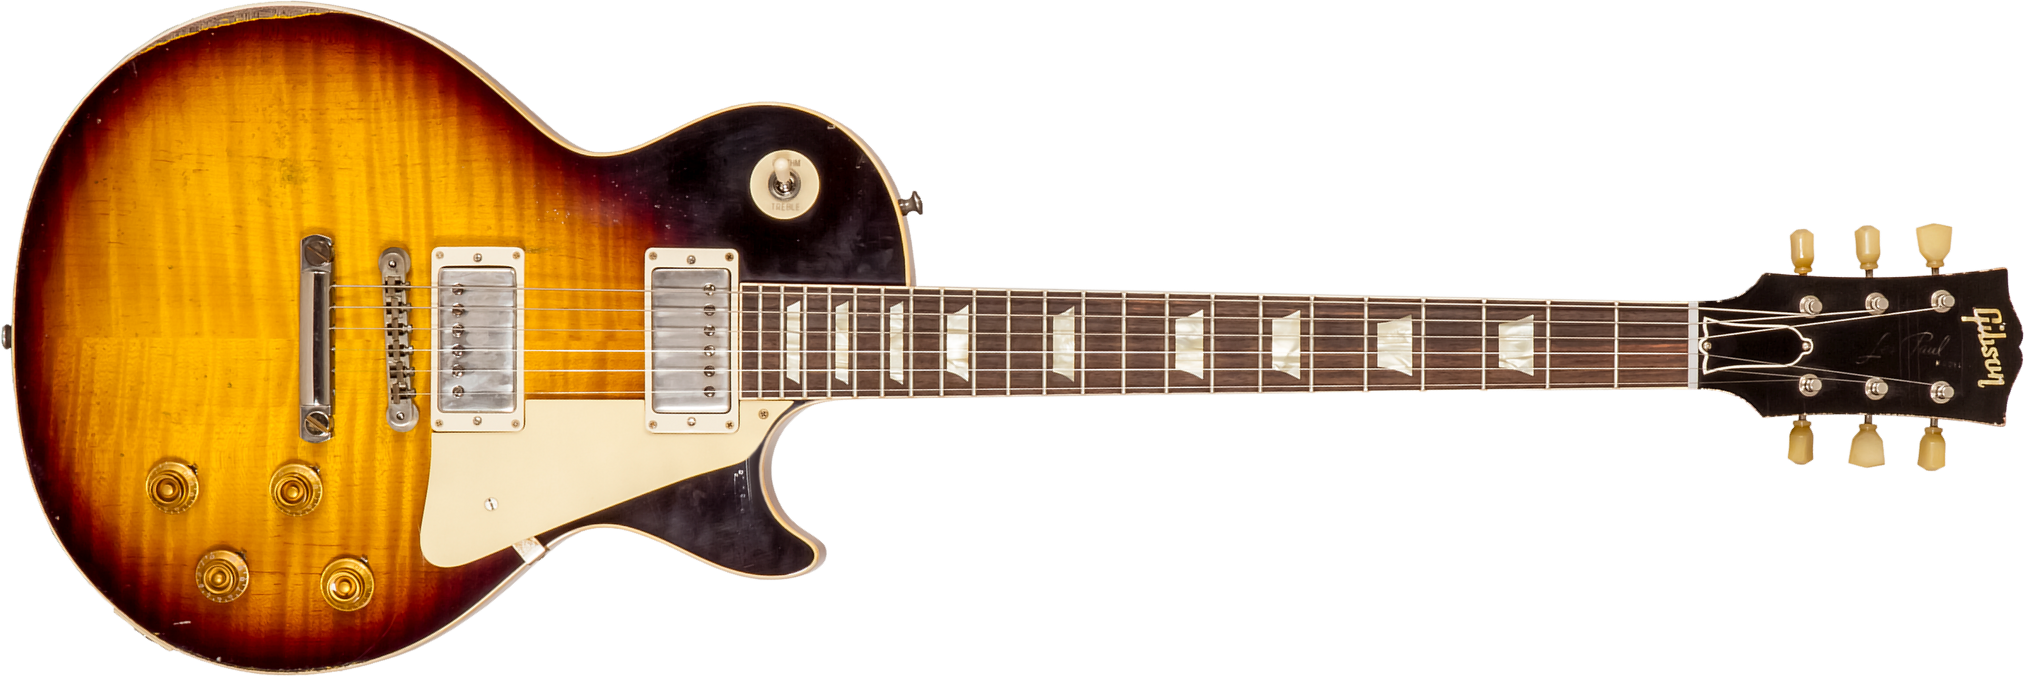 Gibson Custom Shop M2m Les Paul Standard 1959 Reissue 2h Ht Rw #932158 - Ultra Heavy Aged Kindred Burst - Enkel gesneden elektrische gitaar - Main pic